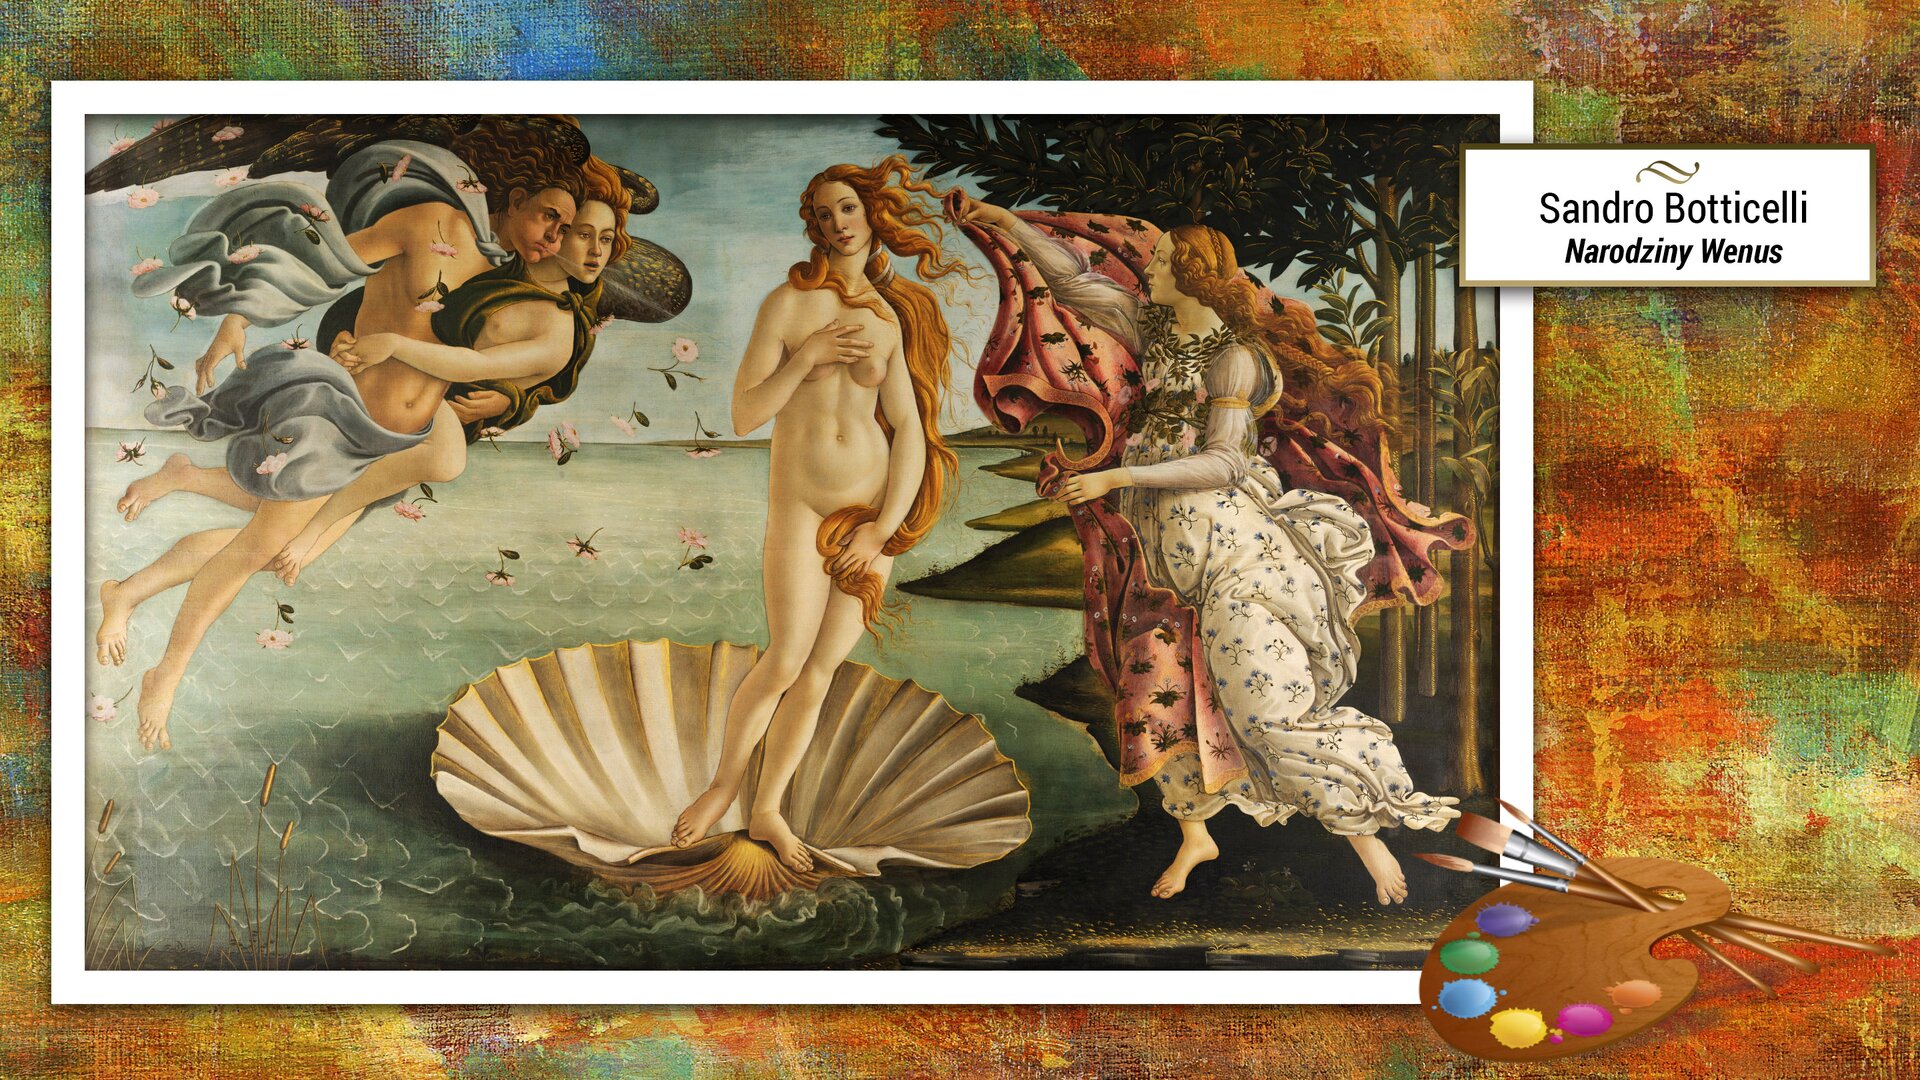 Ilustracja przedstawia obraz, dzieło Sandra Botticellego – „Narodziny Wenus”. Malowidło przedstawia nagą Wenus, symbol piękna kobiecego ciała. Widzimy bogini o długich włosach rozwianych morską bryzą, stojącą na dużej muszli. Po lewej stronie znajdują się półnagie, złączone w uścisku postaci mężczyzny i kobiety. Po prawej stronie znajduje się bogini Hora przystrojona w wieniec i girlandę róż, w dłoniach trzymająca czerwoną szatę. W tle opadające z nieba kwiaty i gaj pomarańczowy.